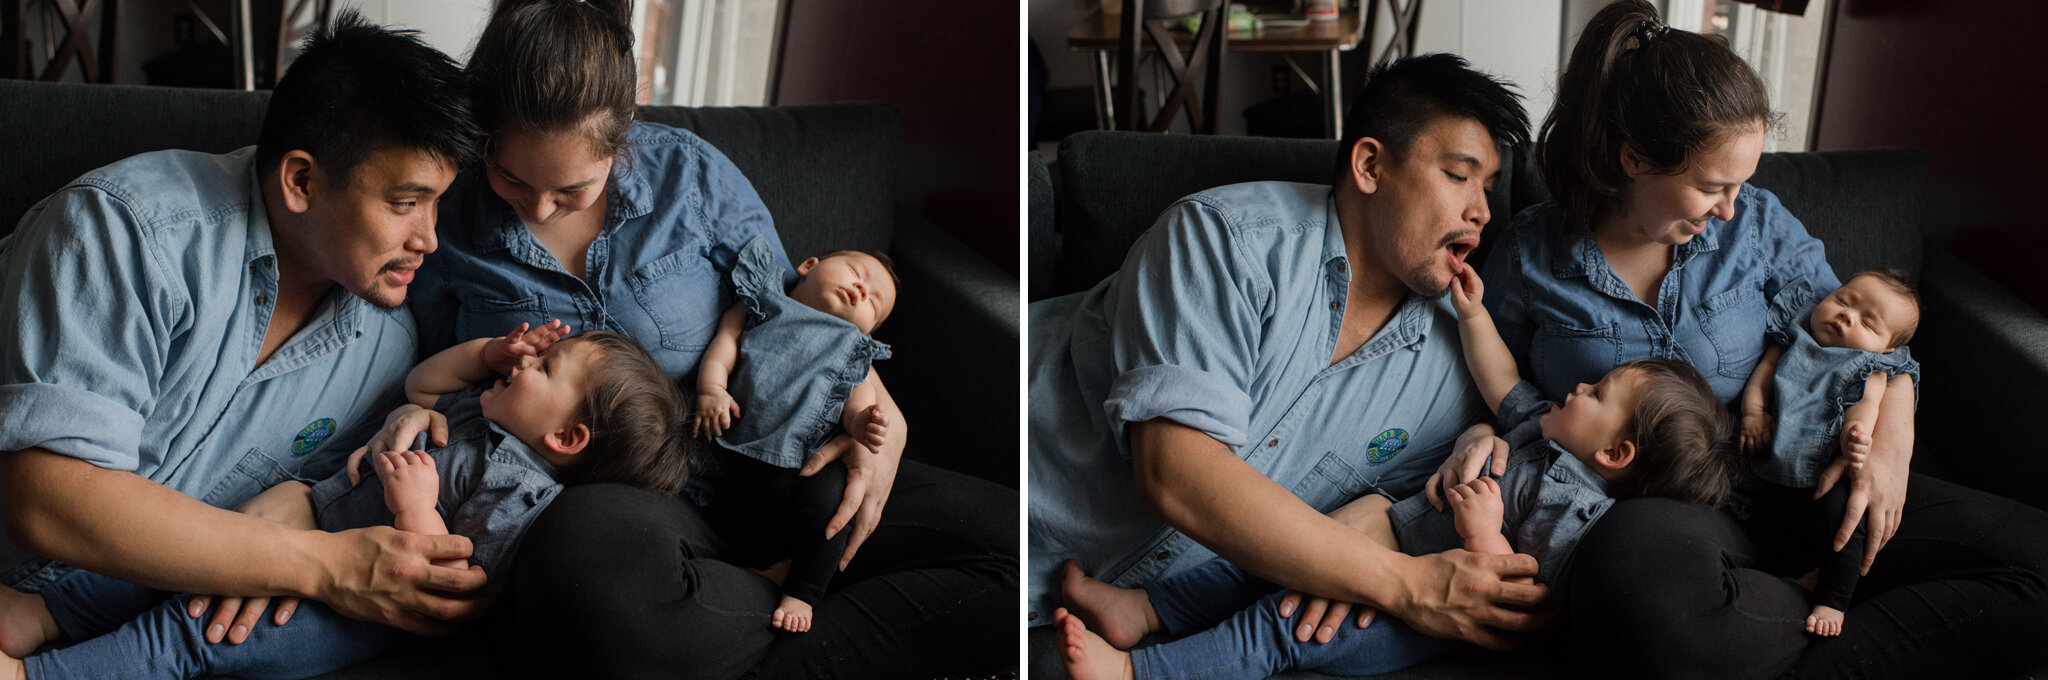 969-newborn-family-photoshoot-documentary-at-home-indoors-toronto-markham-photographer.jpg